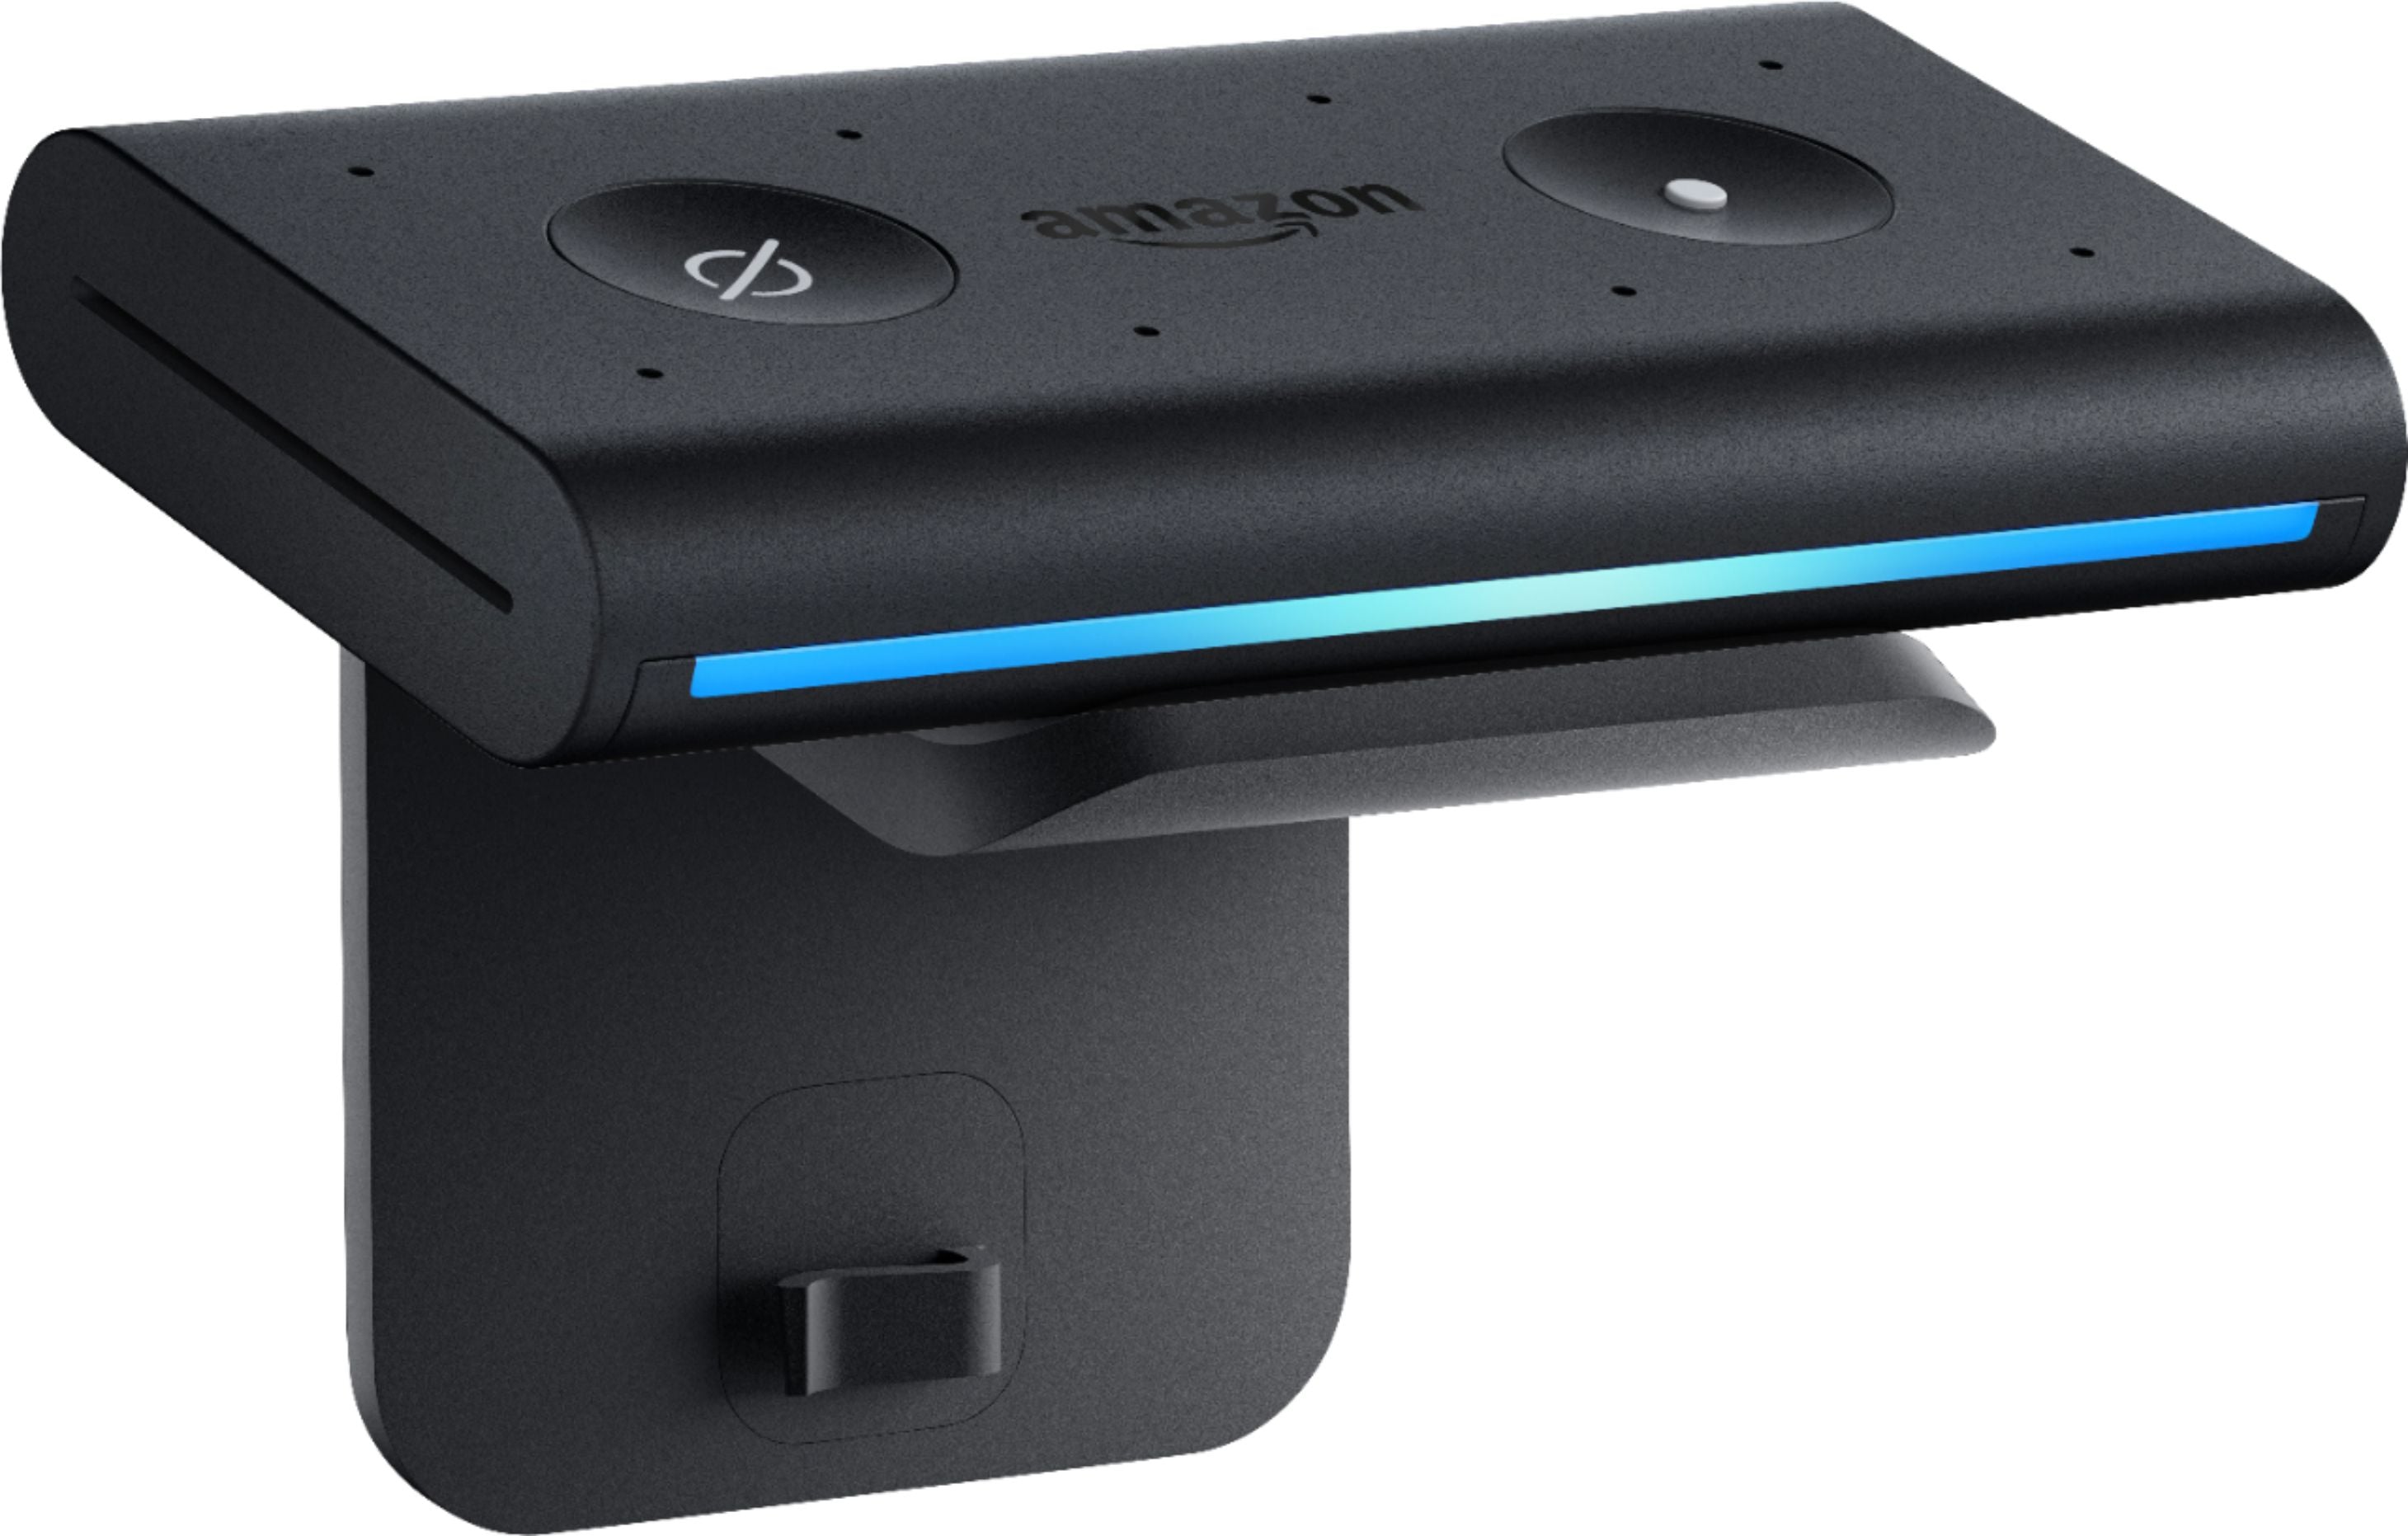 Amazon Echo Auto Smart Speaker + Smart Plug + Cat5 Cable + Batteries